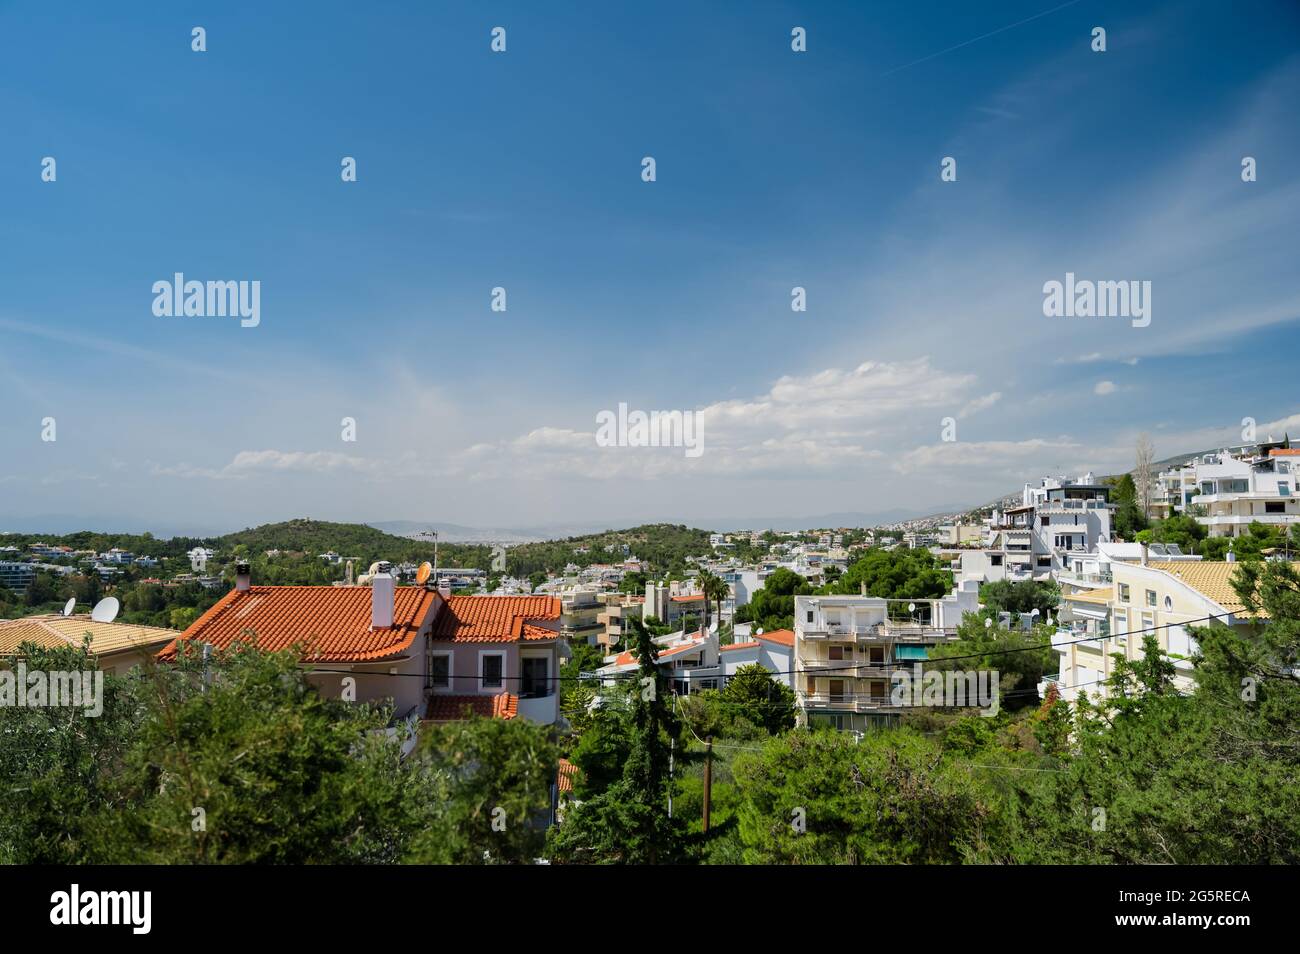 Paesaggio urbano di Atene in Grecia. Vista dall'alto. Architettura urbana e molti alberi verdi. Zona collinare. Giorno di sole. Foto Stock